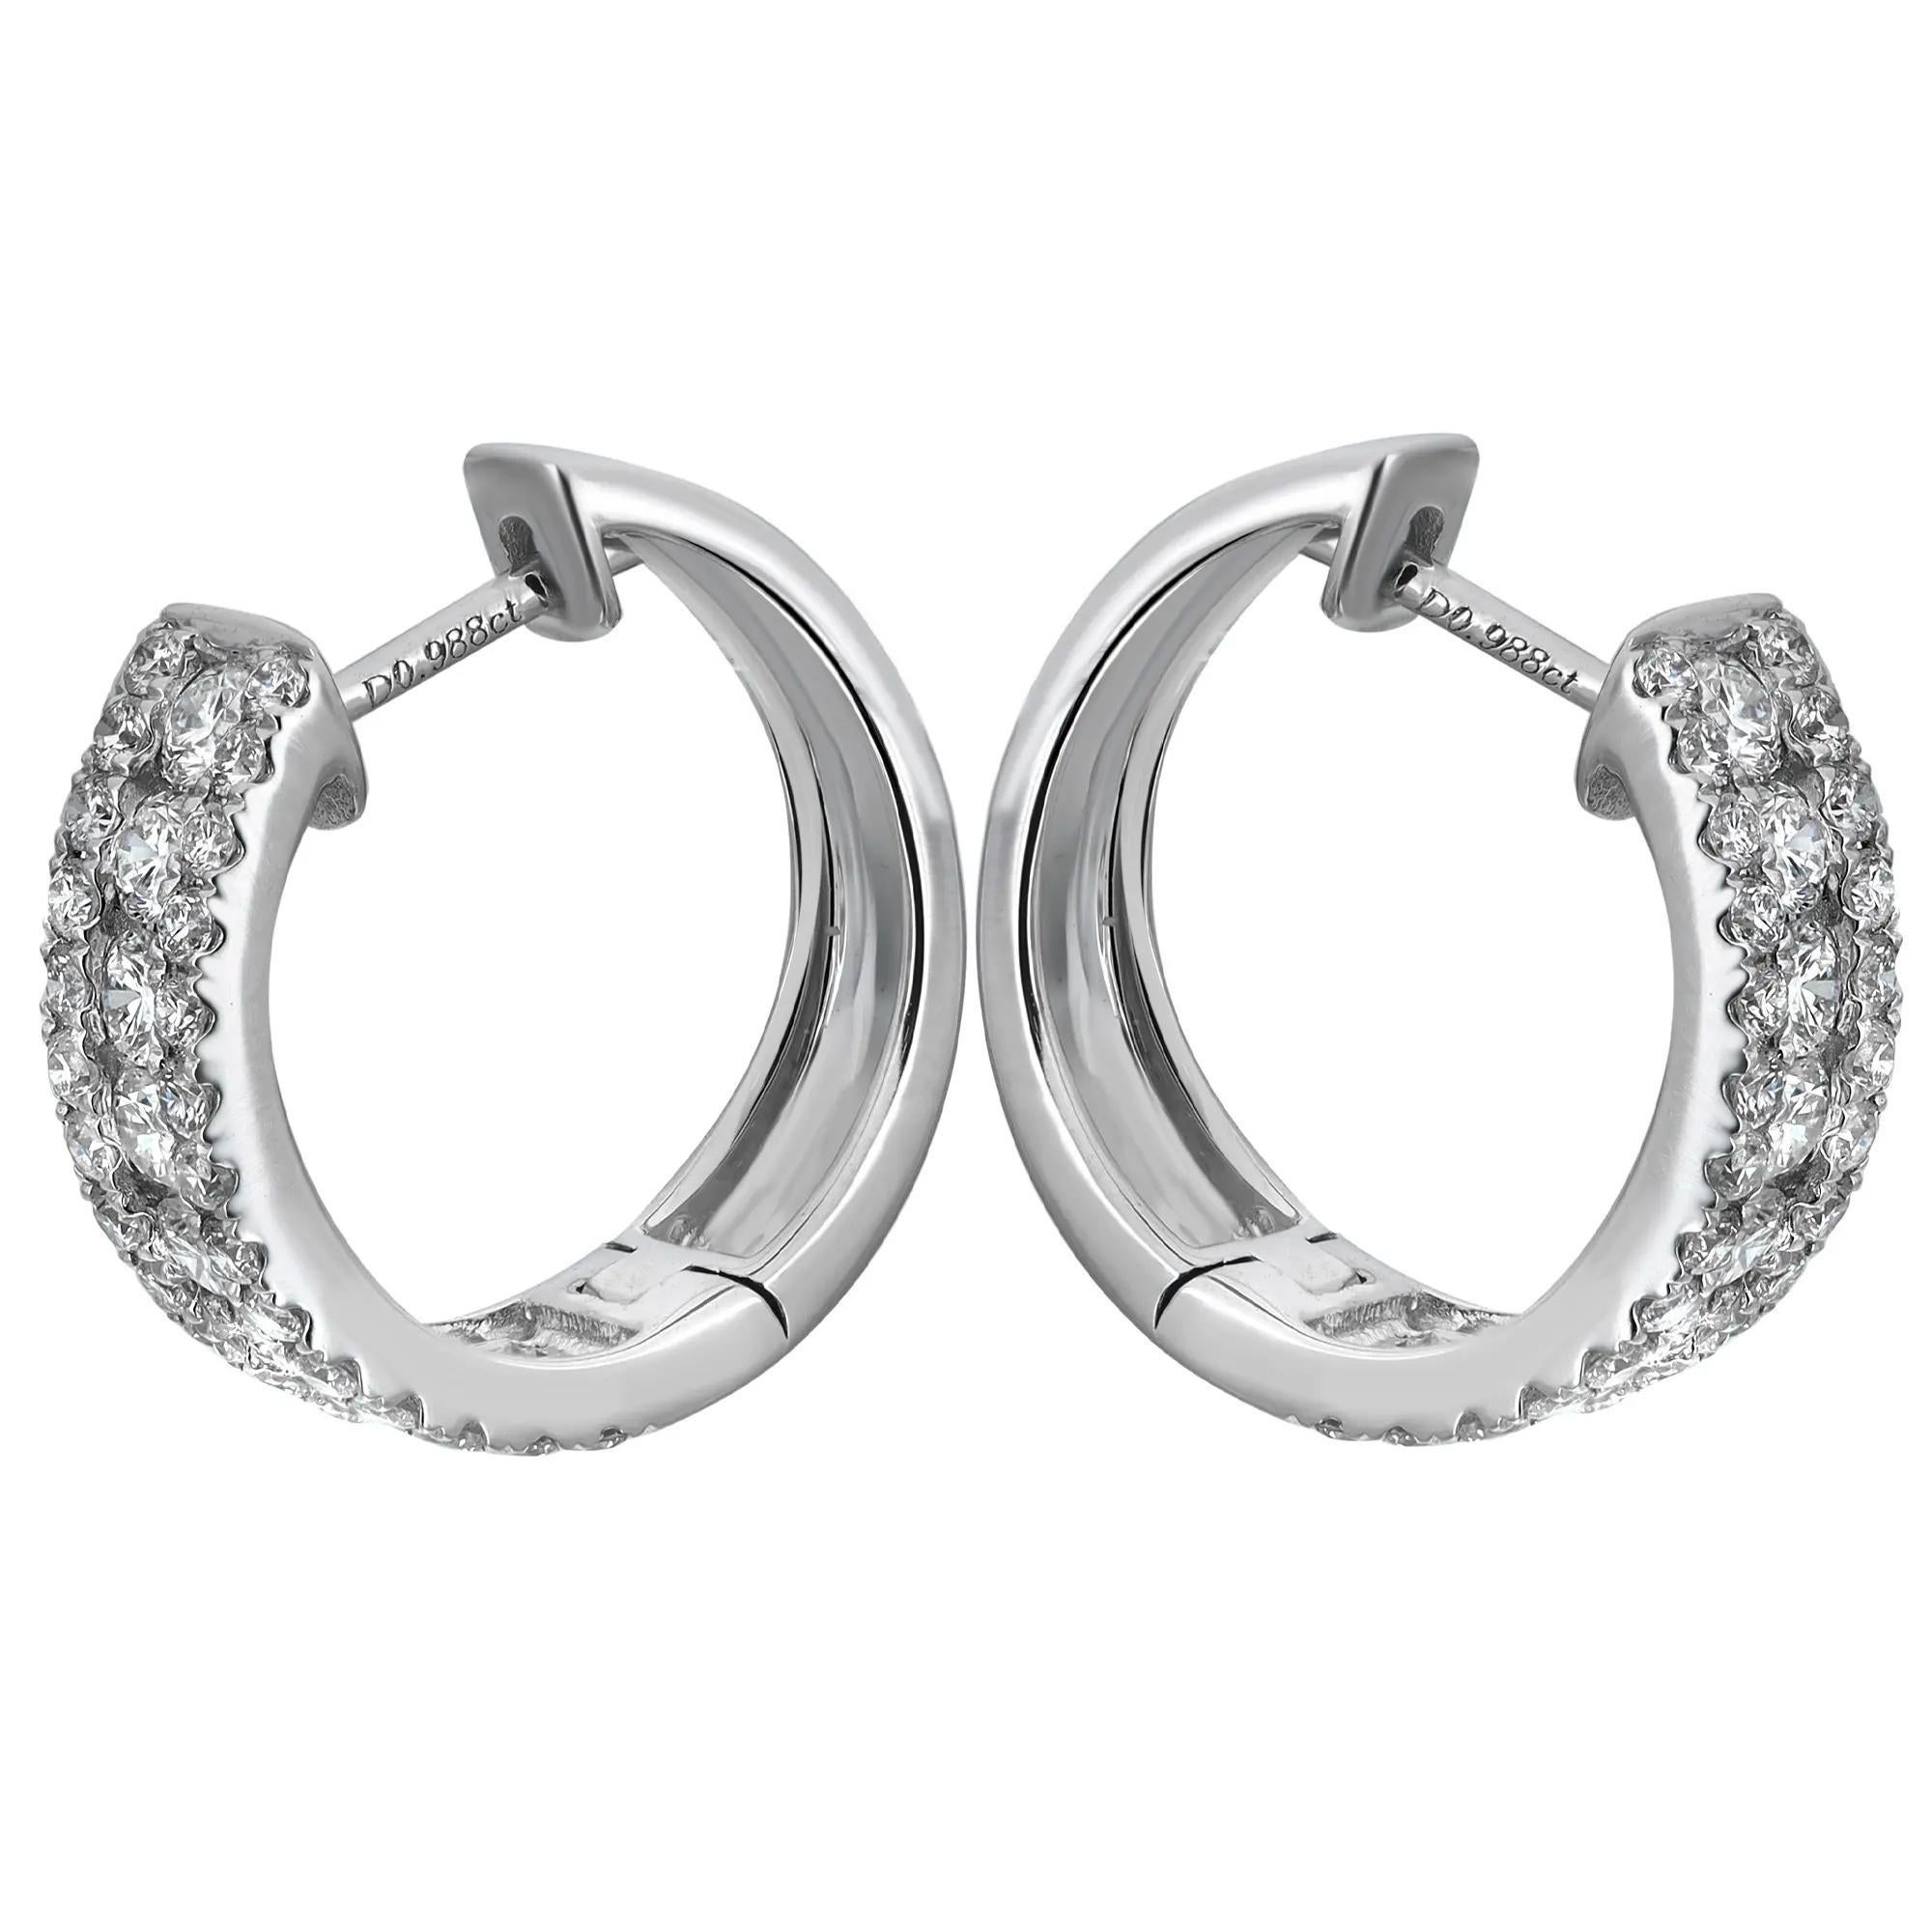 Diese glamourösen Diamant-Ohrringe zeichnen sich durch eine mittlere Reihe von kanalgefassten, schillernden runden Diamanten im Brillantschliff mit zackengefassten runden Diamanten aus. Gesamtgewicht der Diamanten: 1,10 Karat. Verkrustet in